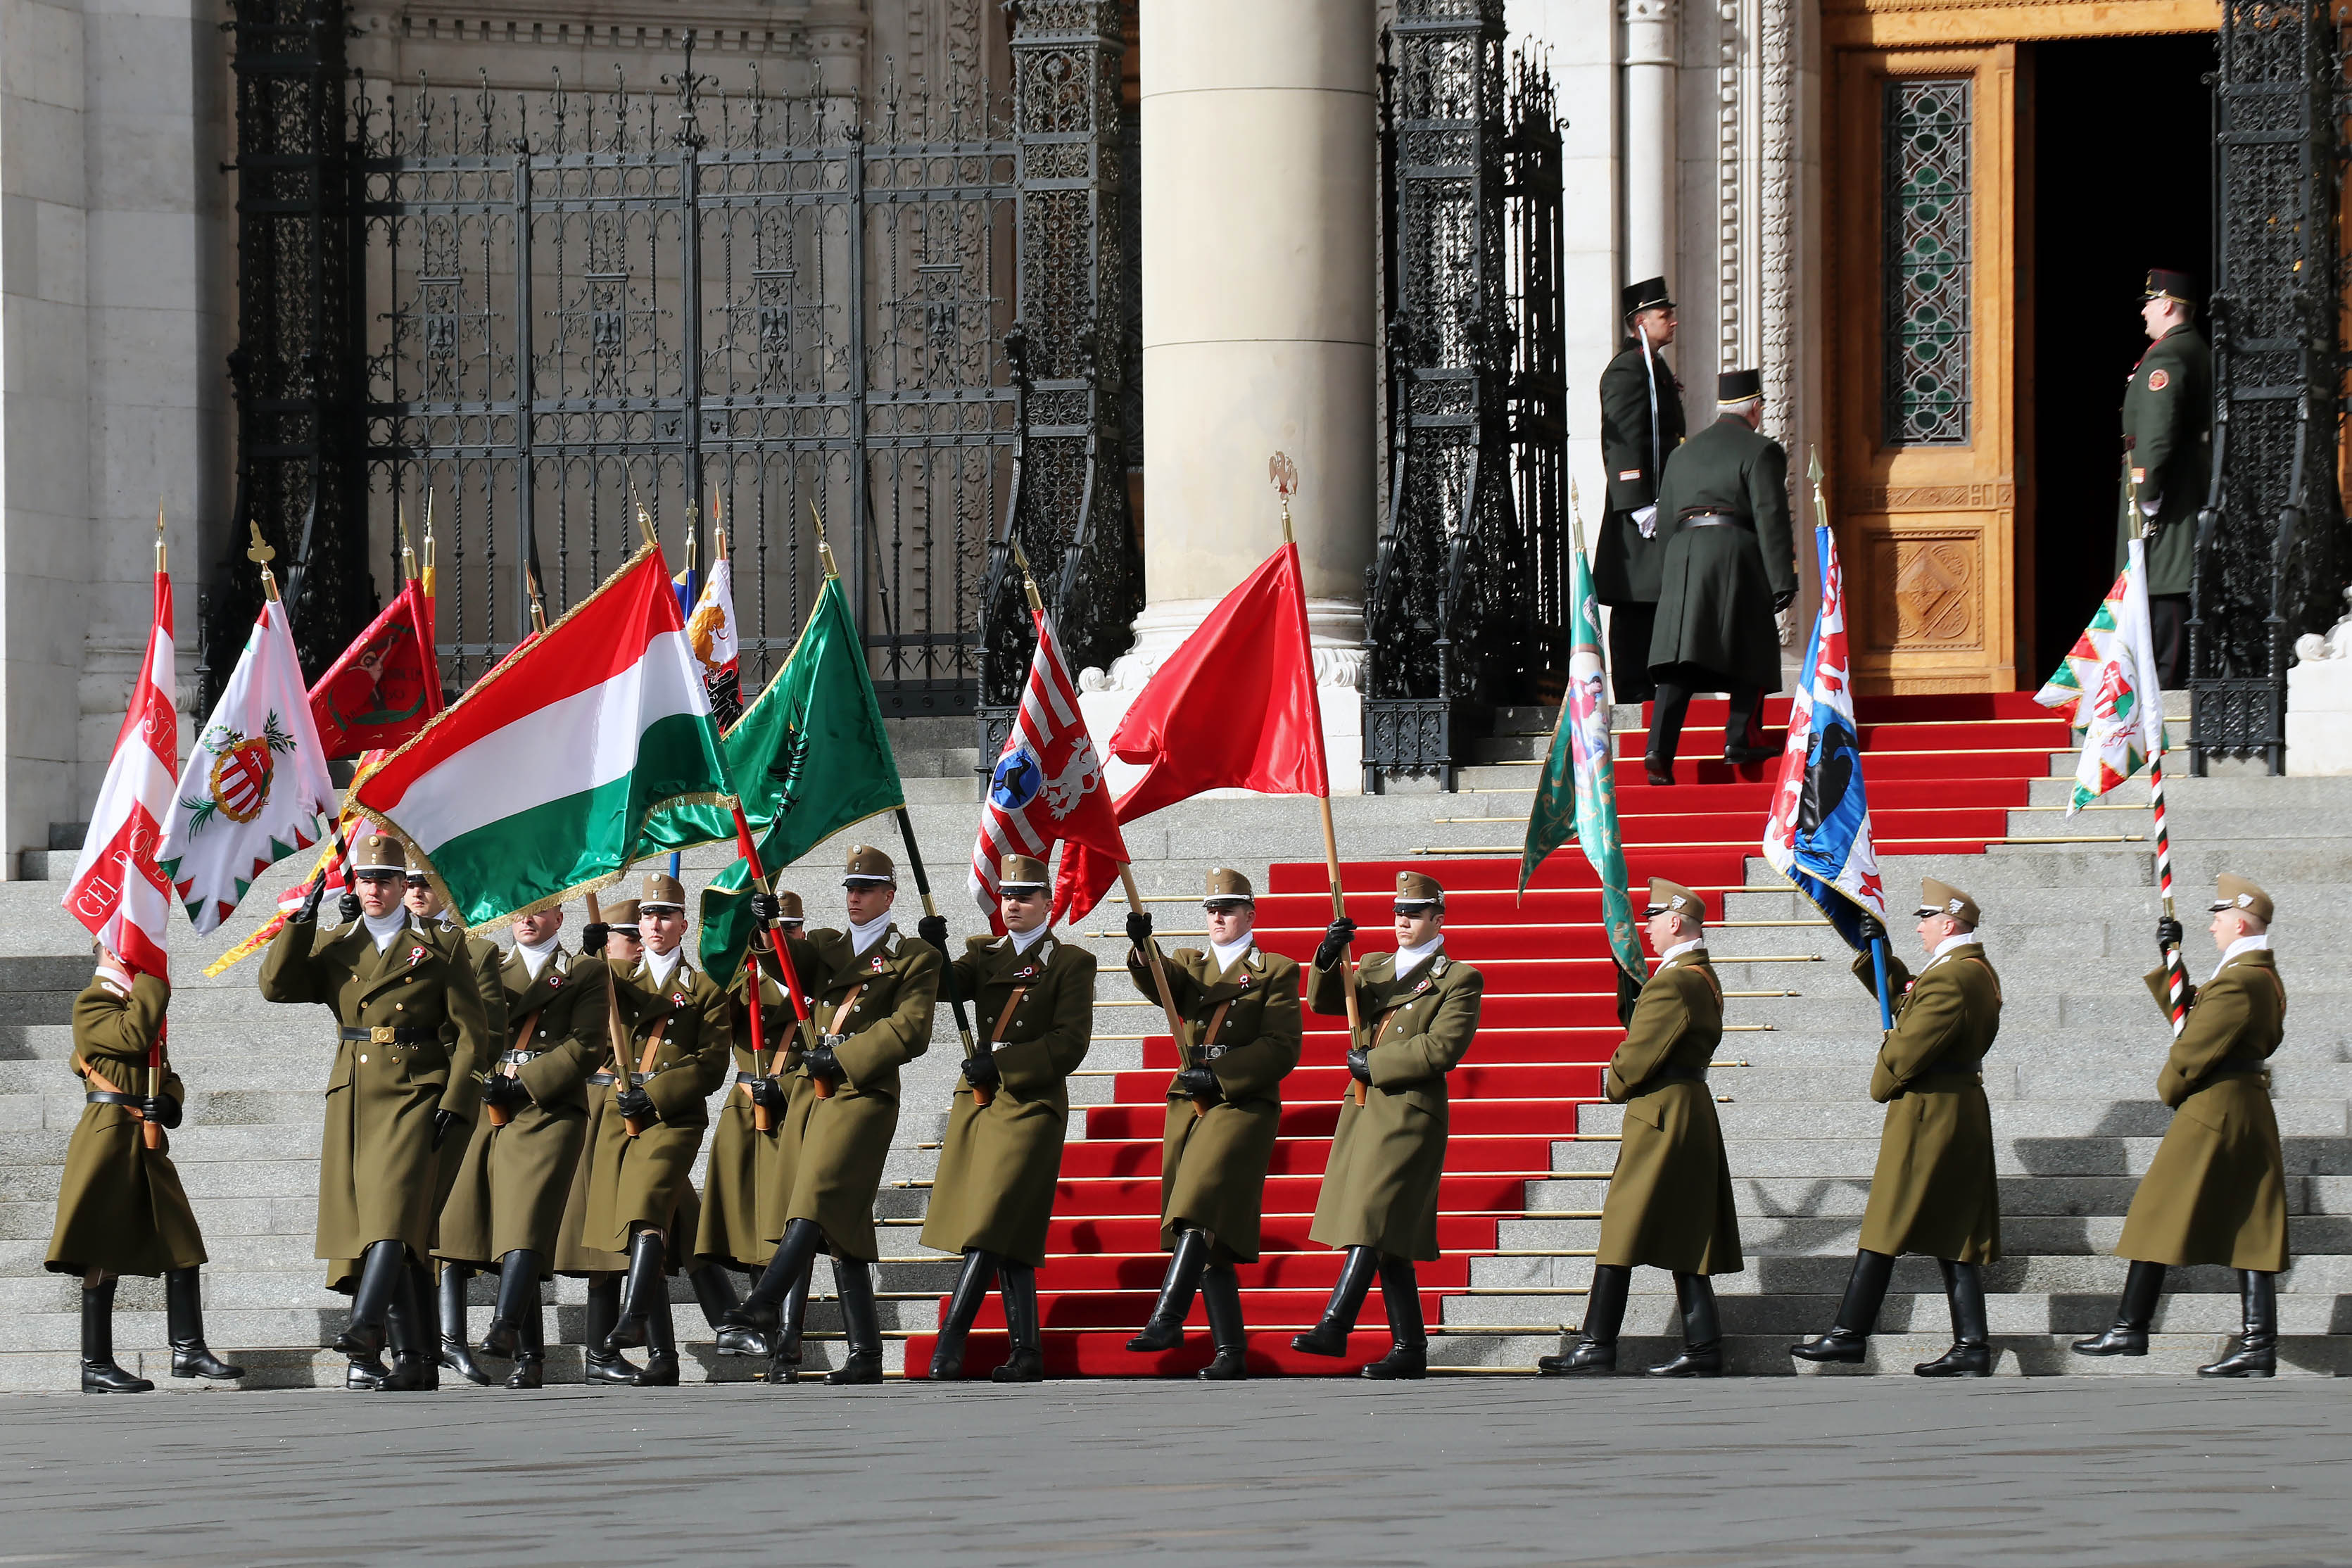 15月XNUMX日匈牙利国旗升起